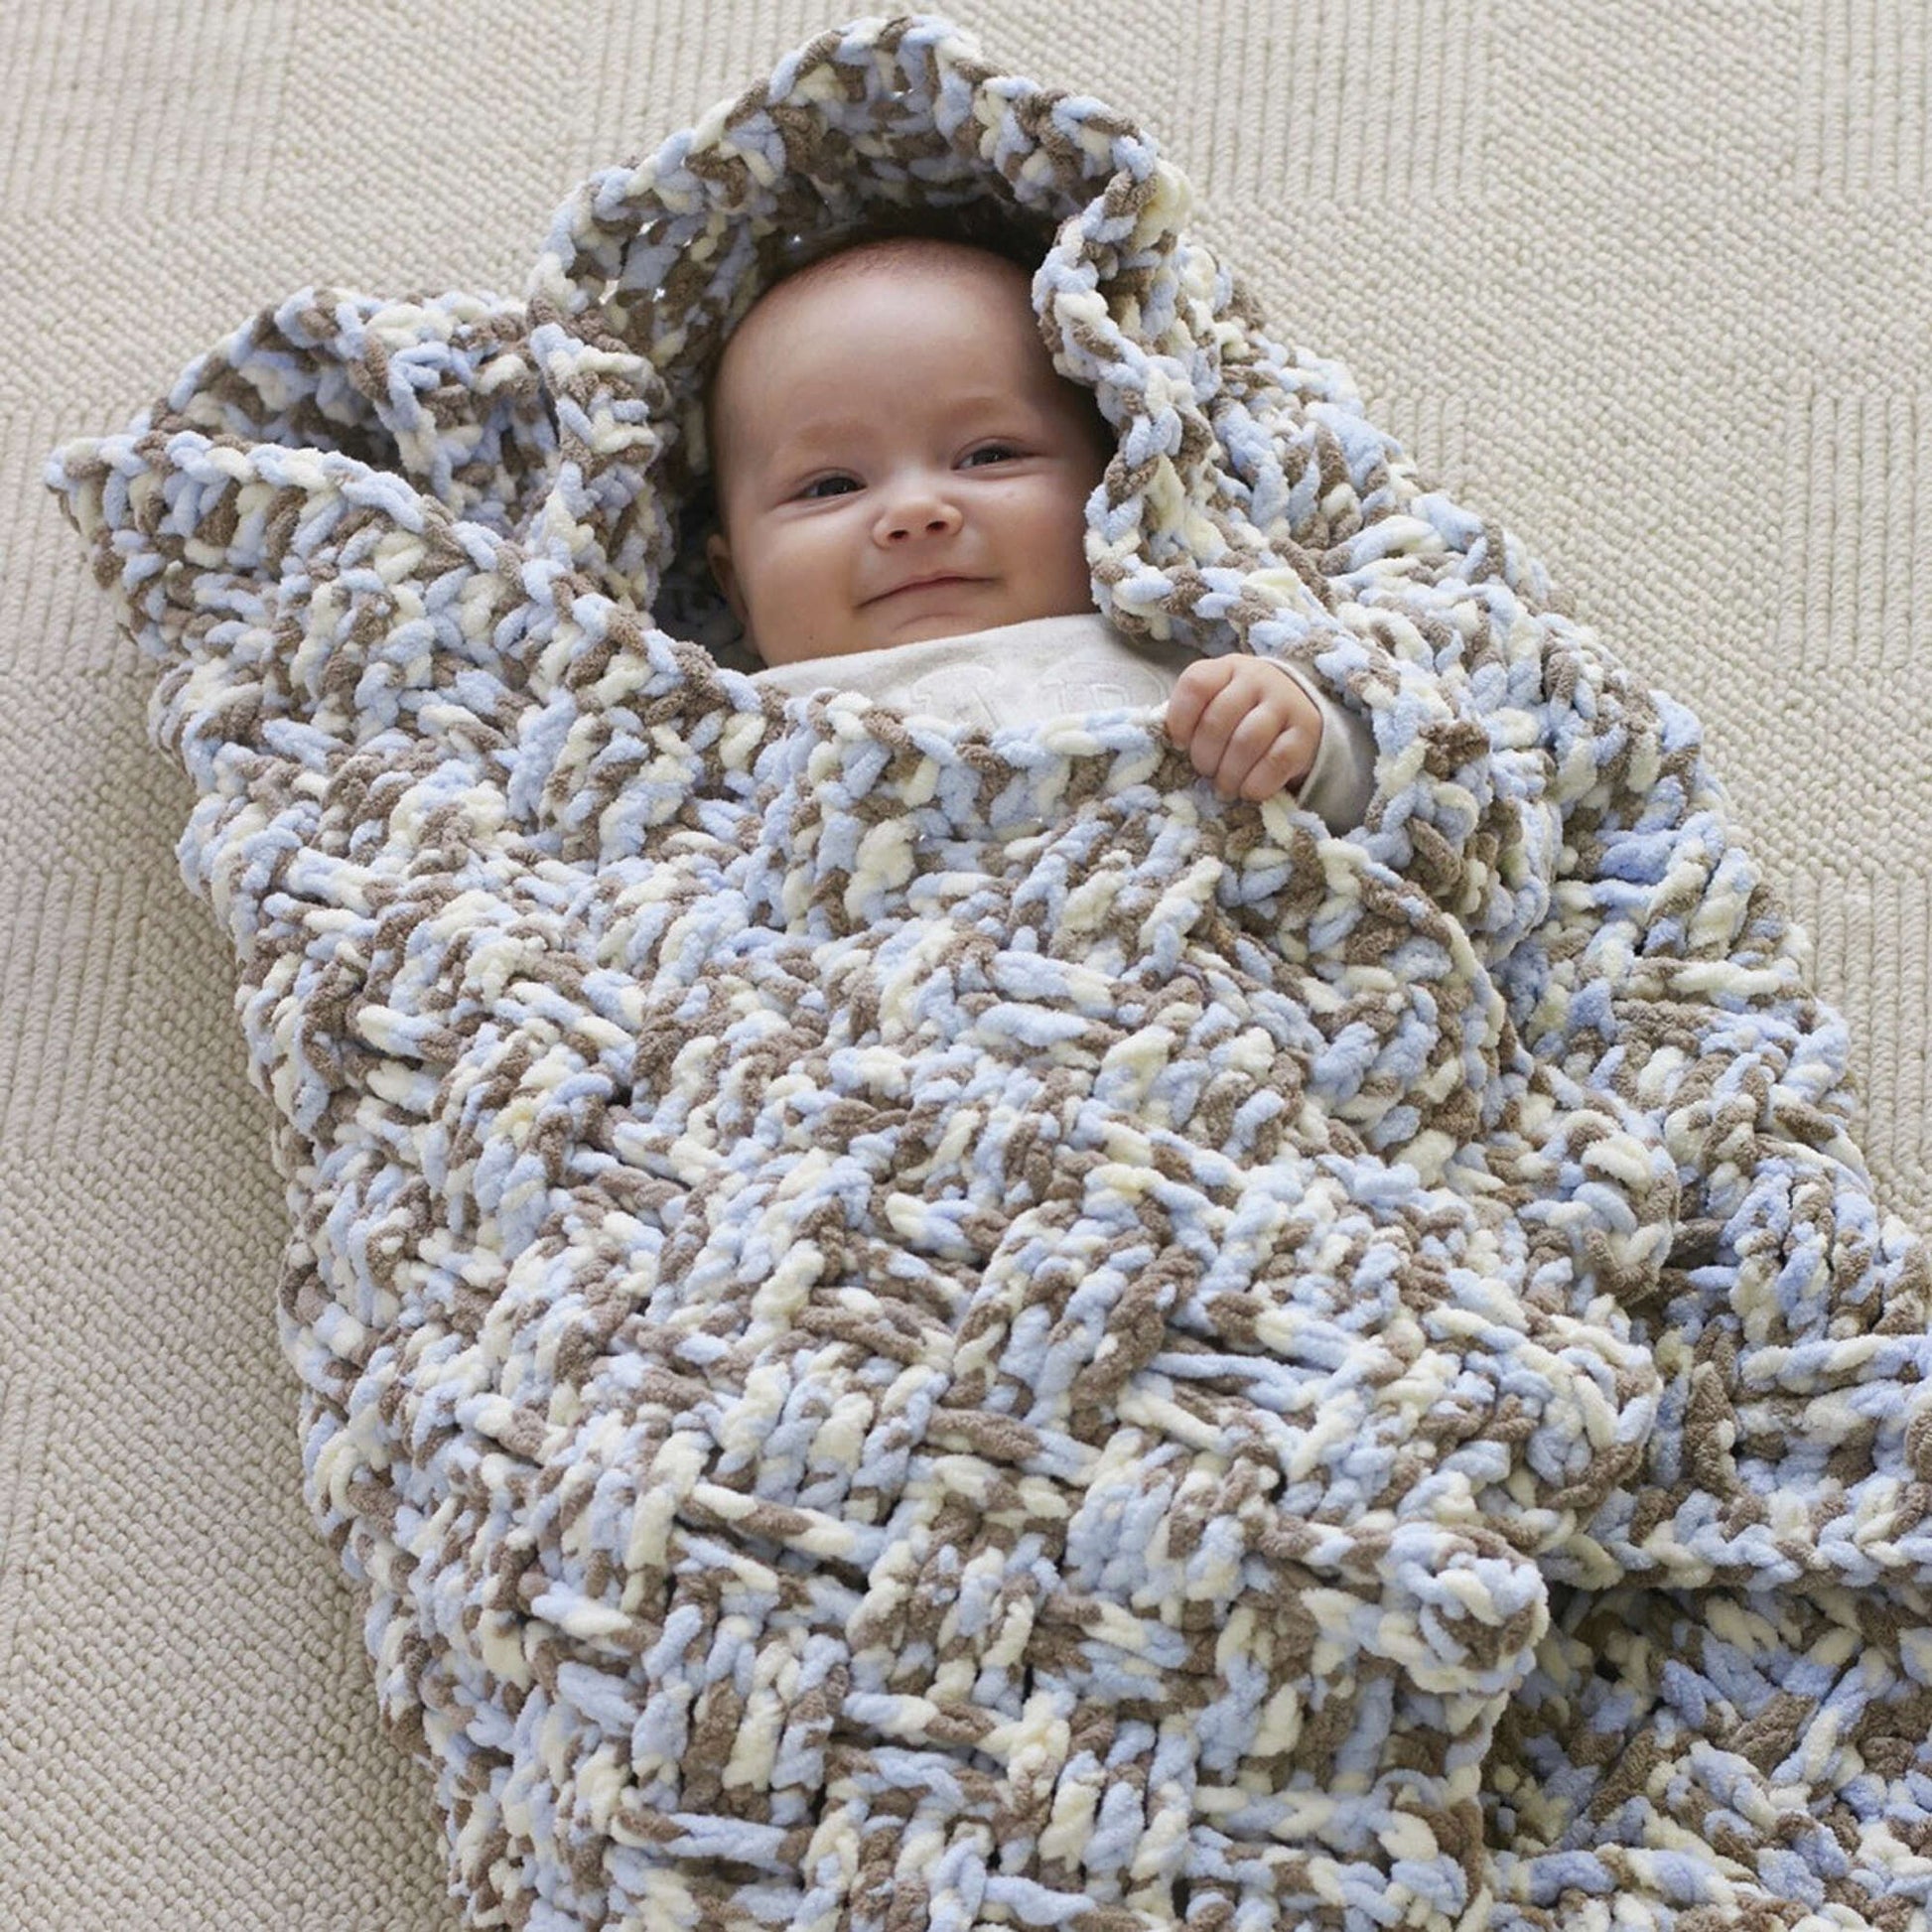 Bernat Dream Weaver Crochet Blanket Crochet Blanket made in Bernat Baby Blanket yarn